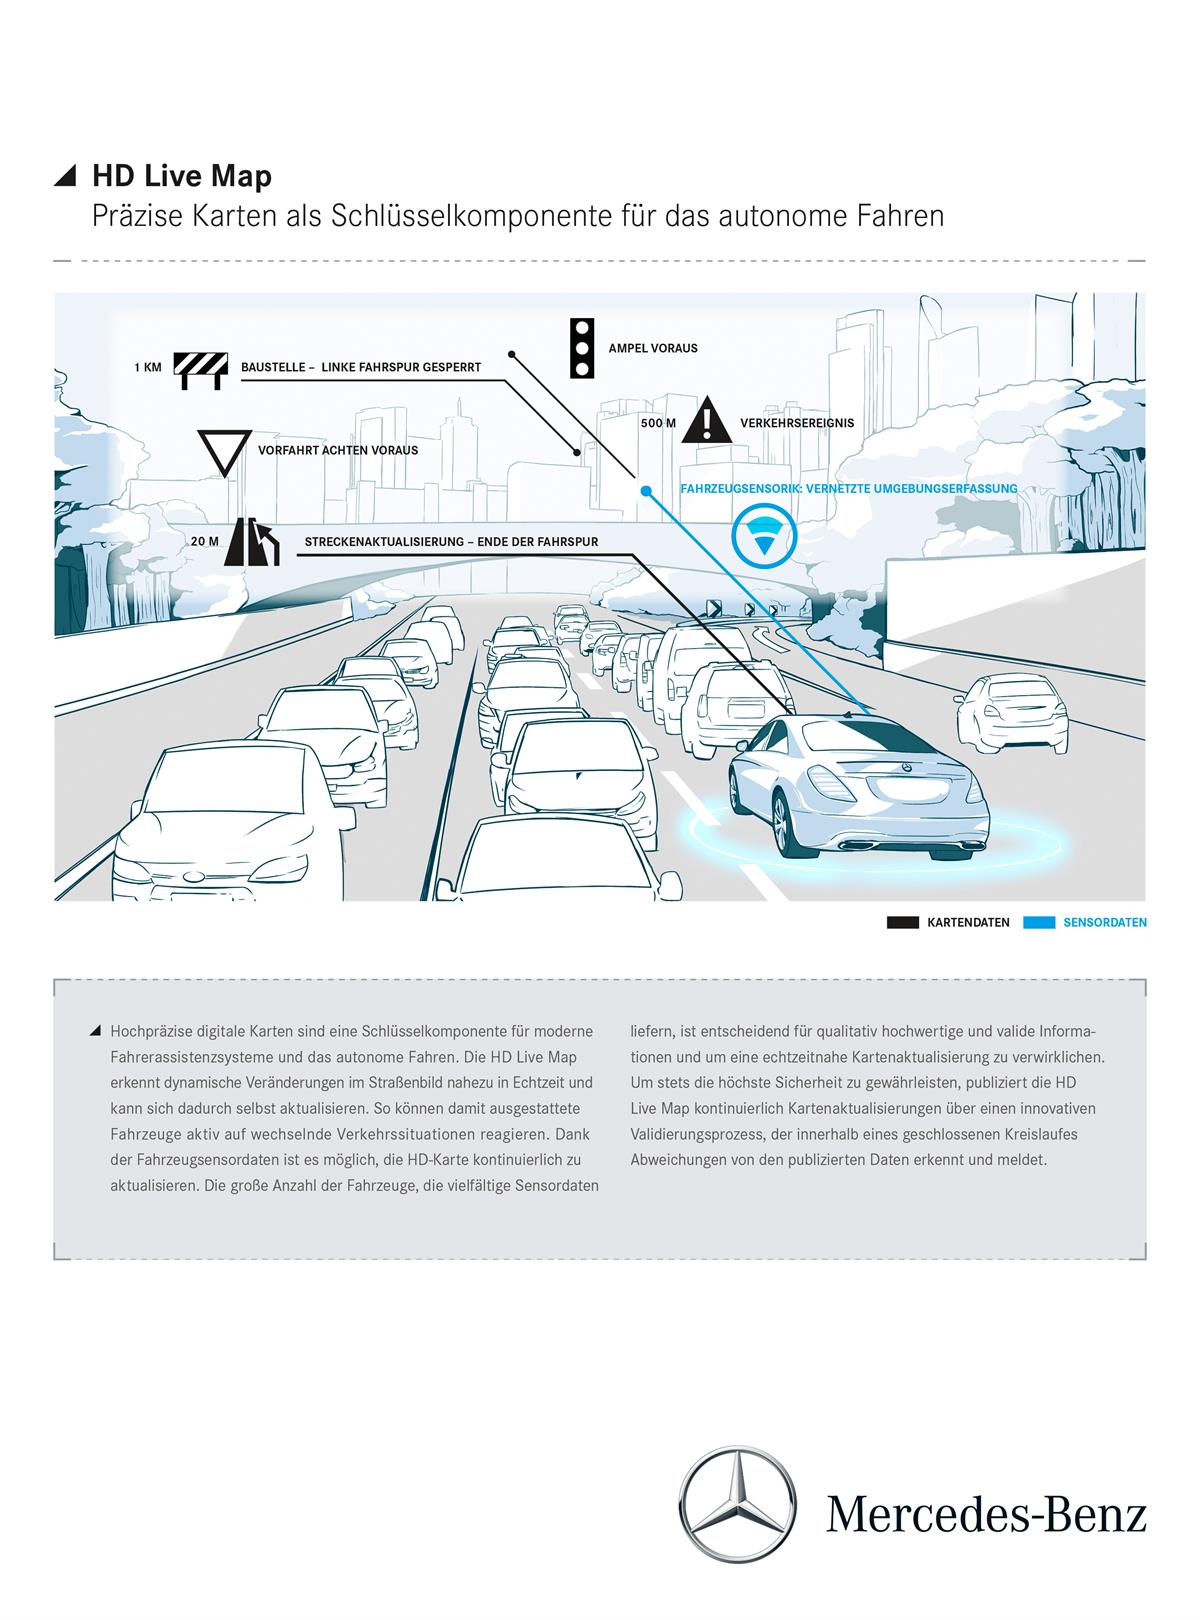 Daimler und HERE entwickeln HD Live Map für künftige Mercedes-Benz Modelle